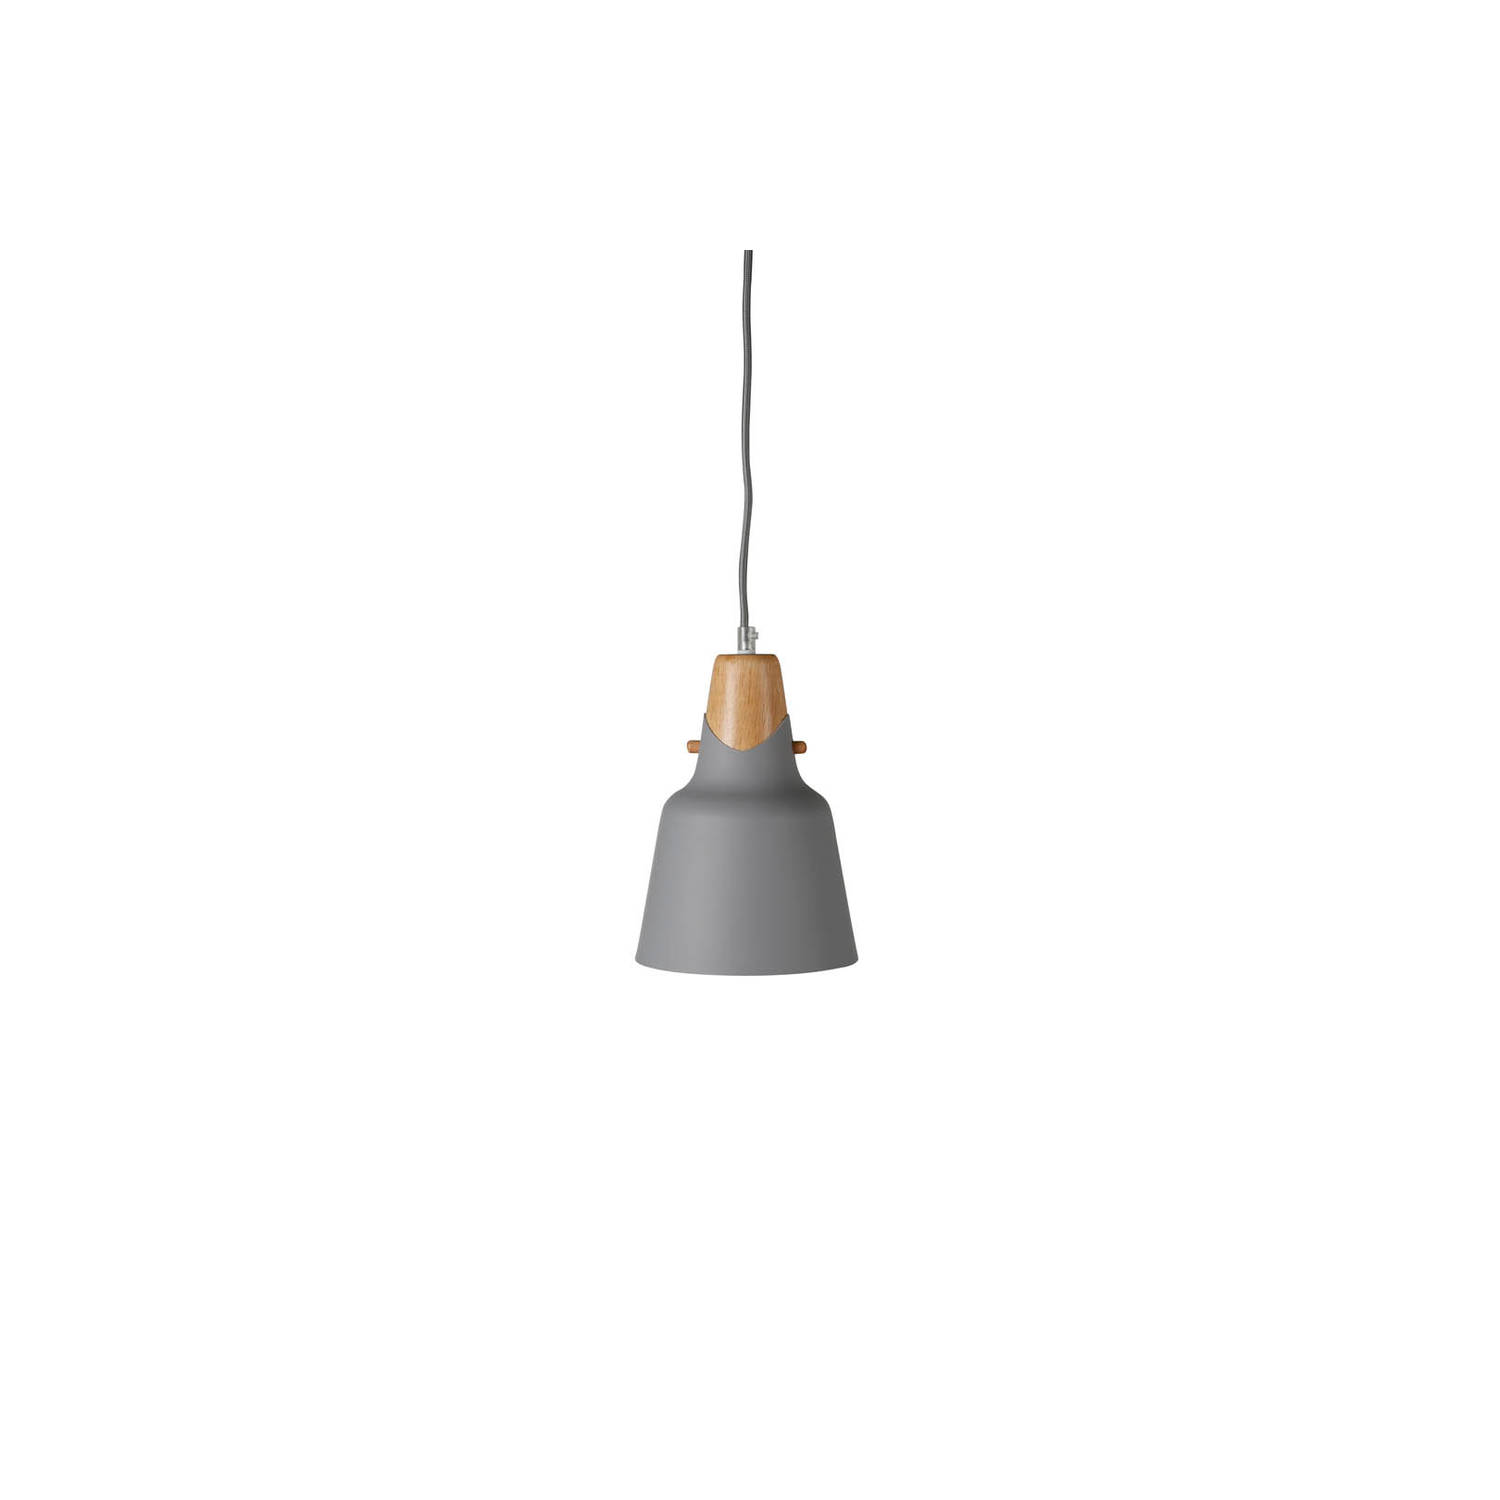 Hioshop Rigel verlichting hanglamp Ã16cm aluminum grijs, hout.